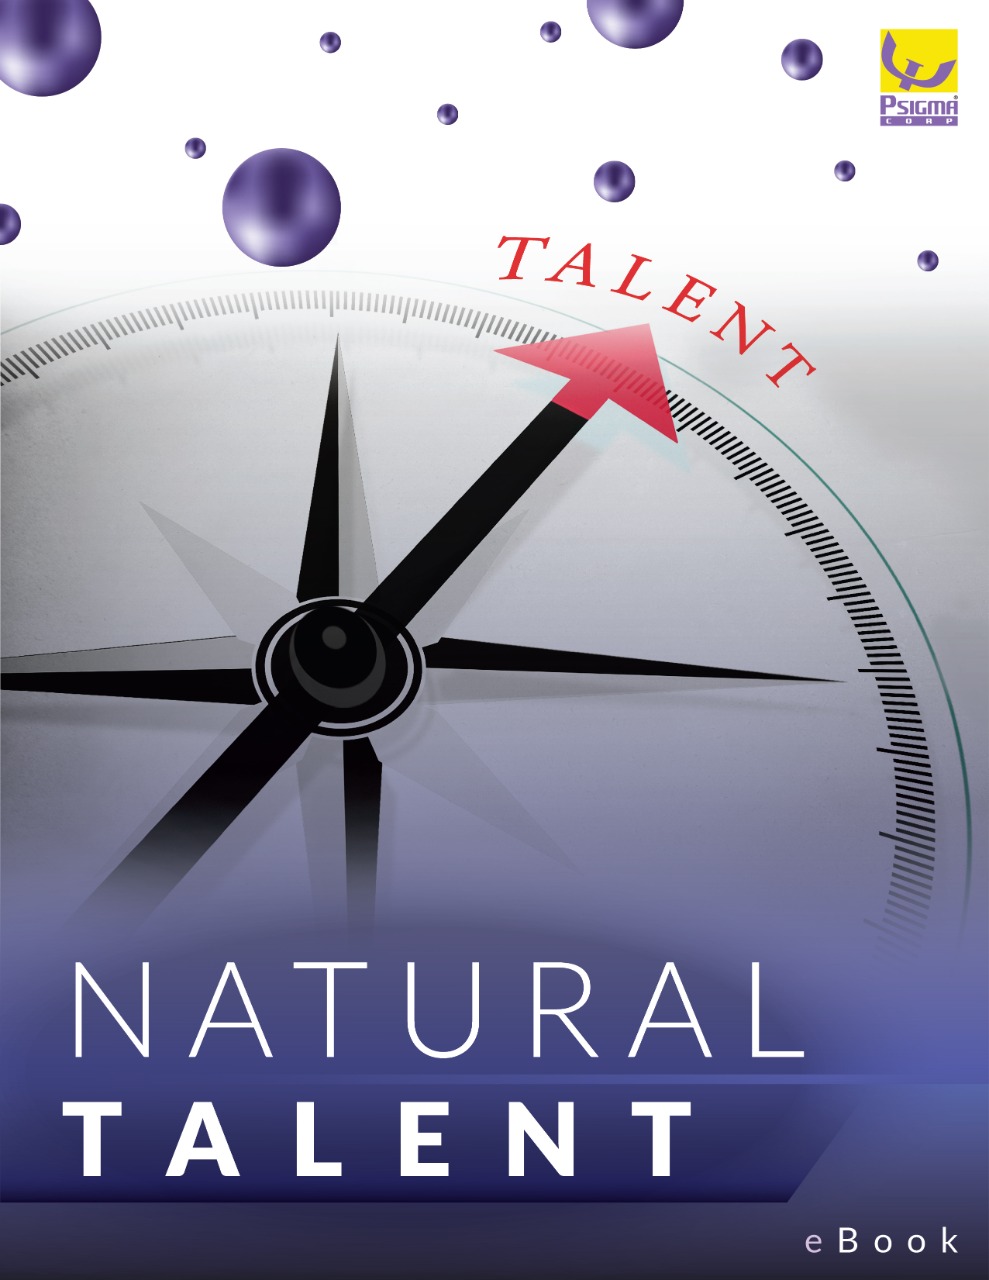 Talent Natural